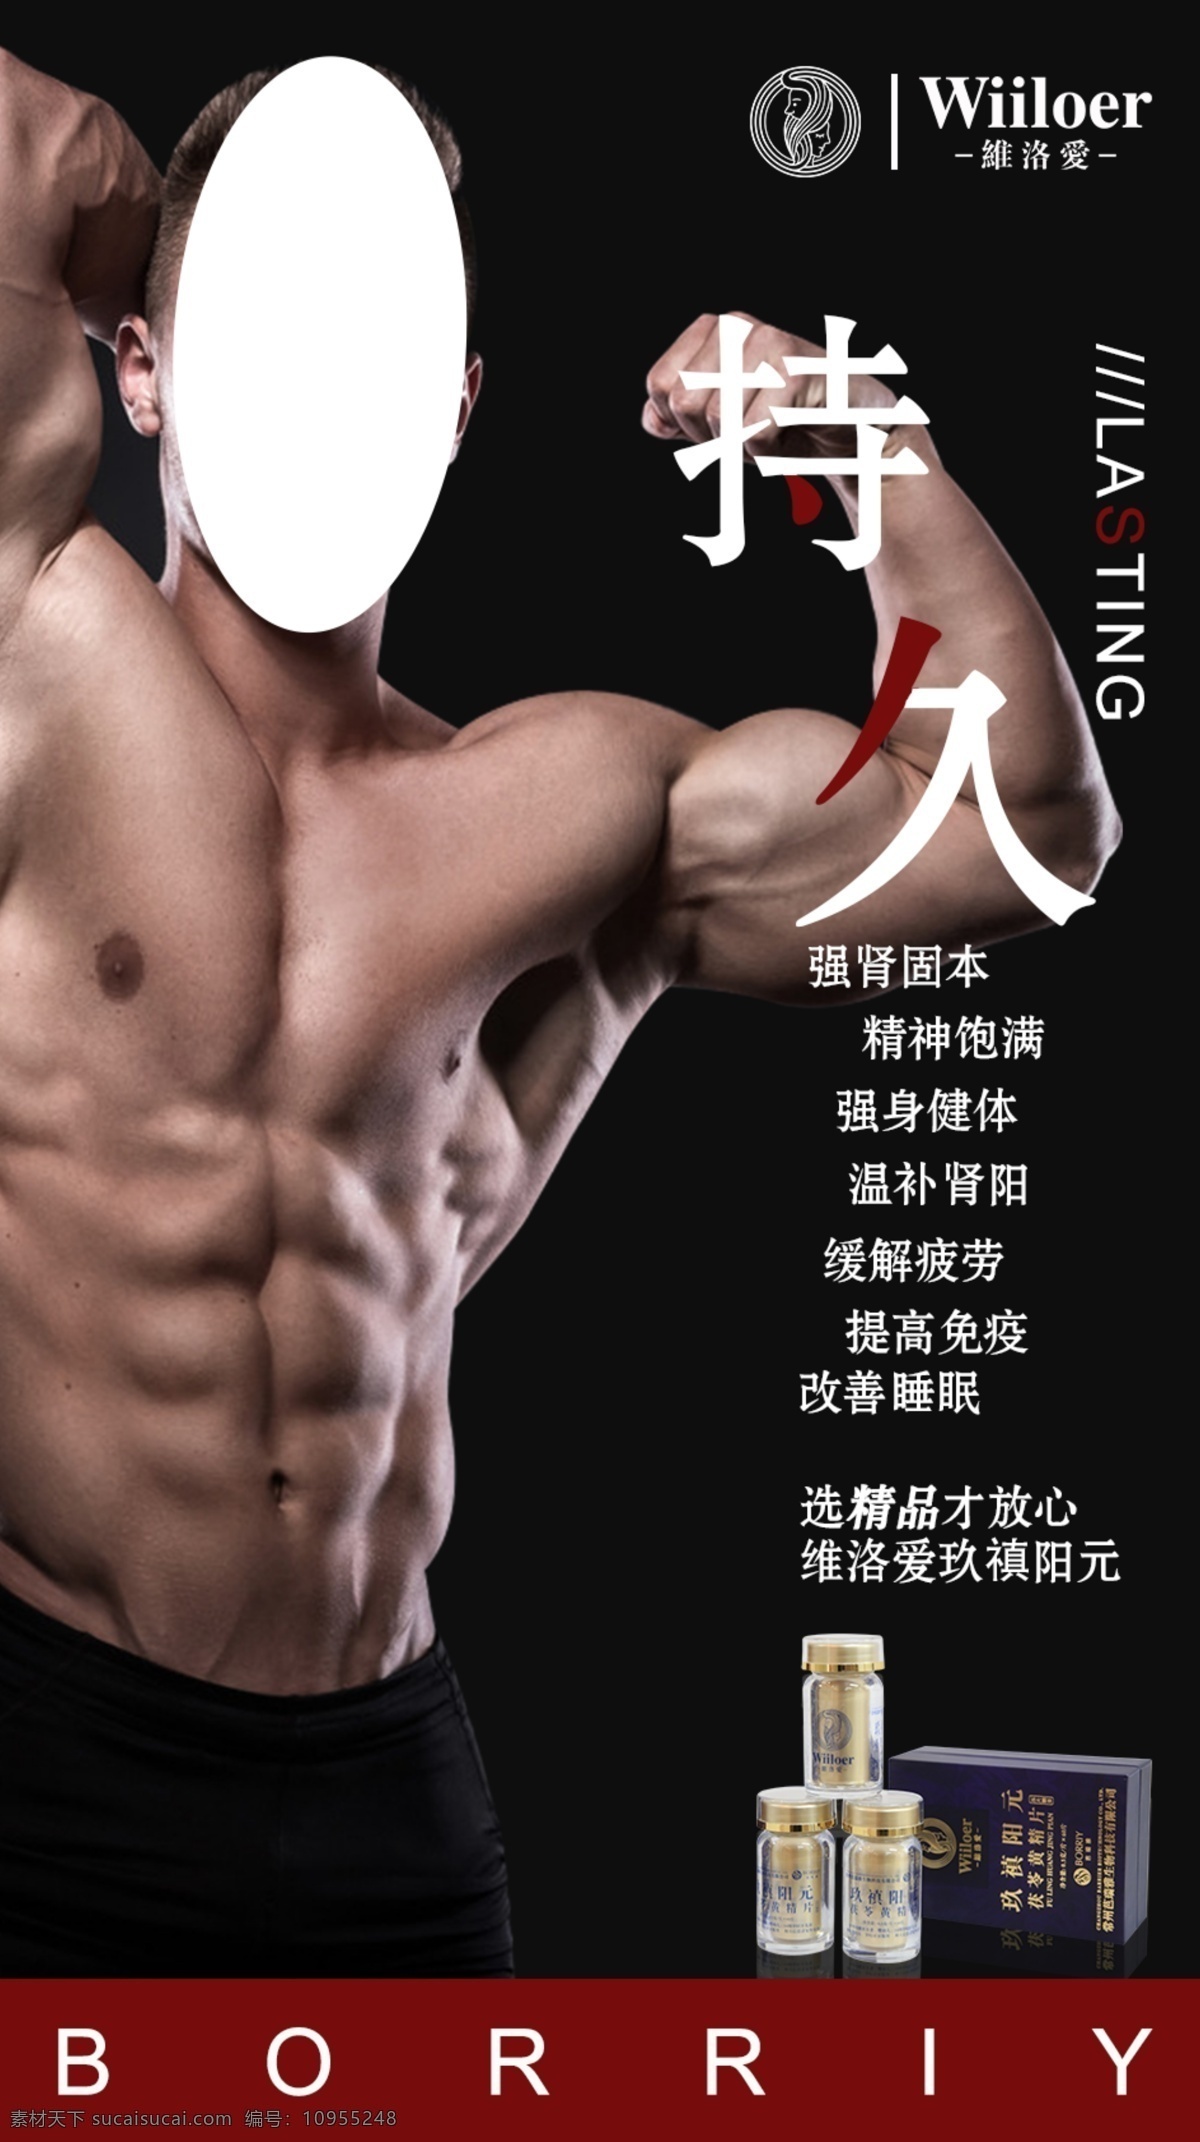 微商男性海报 微商 男性疾病 男性健康 产品功效宣传